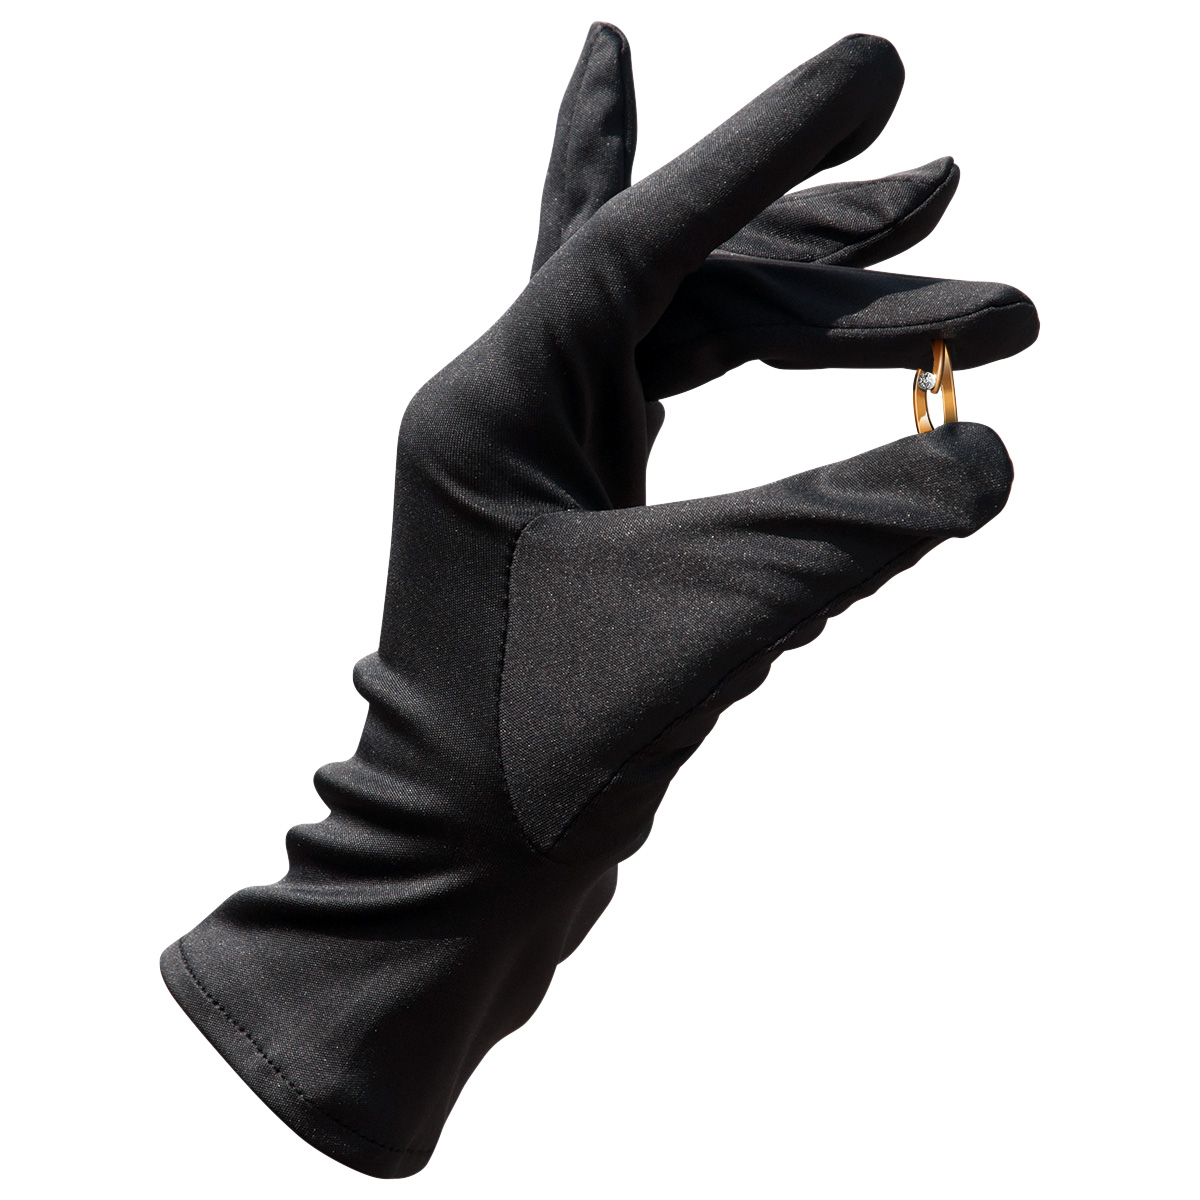 Mikrofaser Handschuh-Paar Haute Couture, schwarz, Größe S
